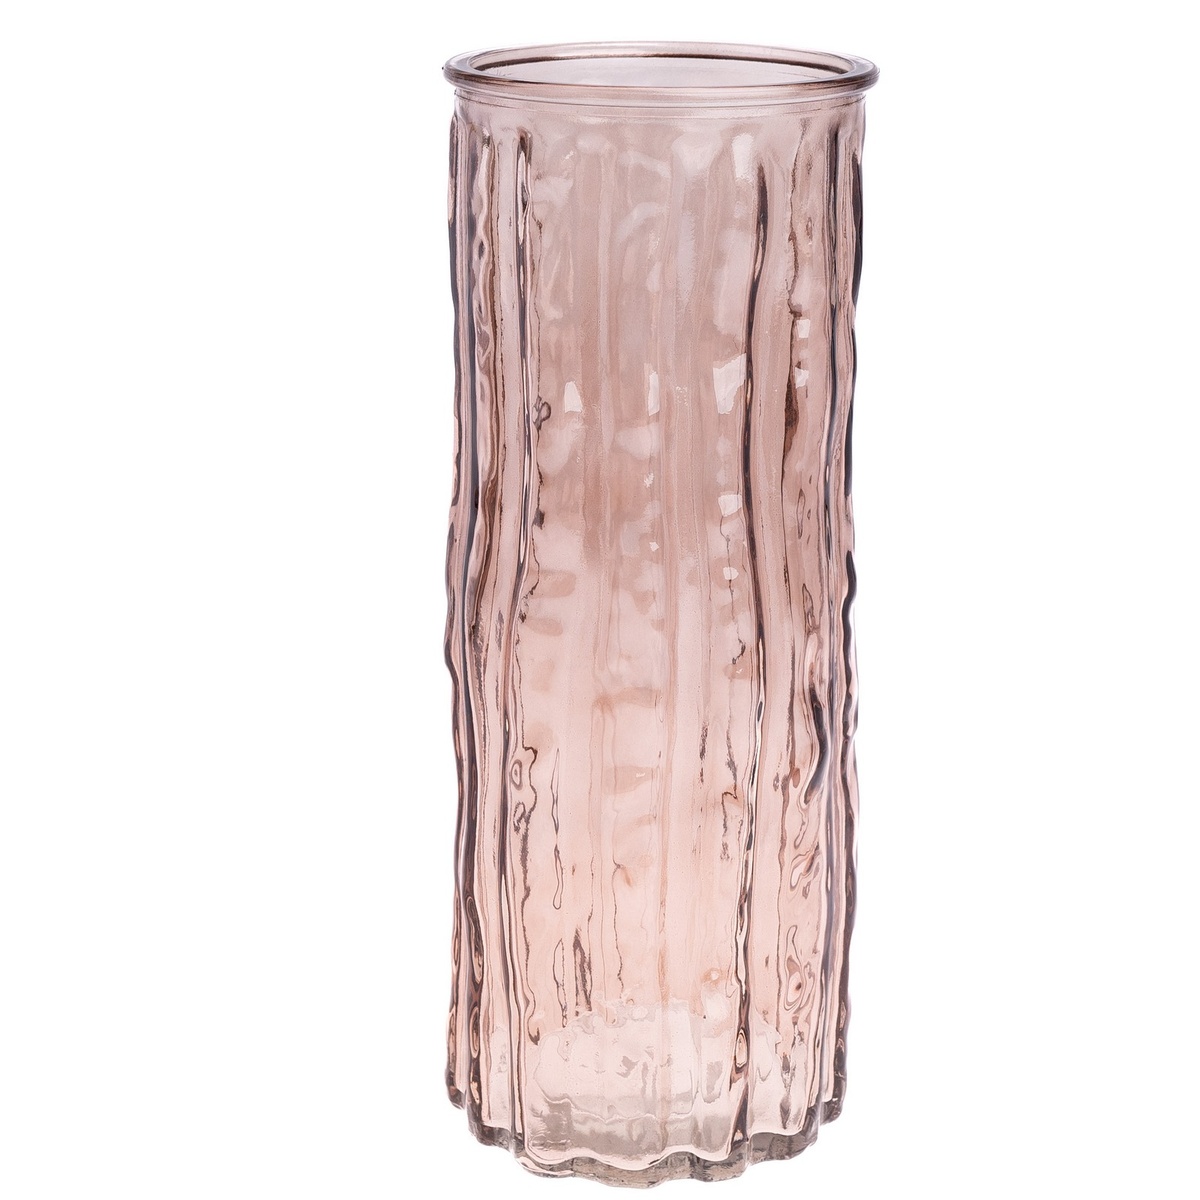 Skleněná váza Rebeka hnědá, 9,5 x 25 cm